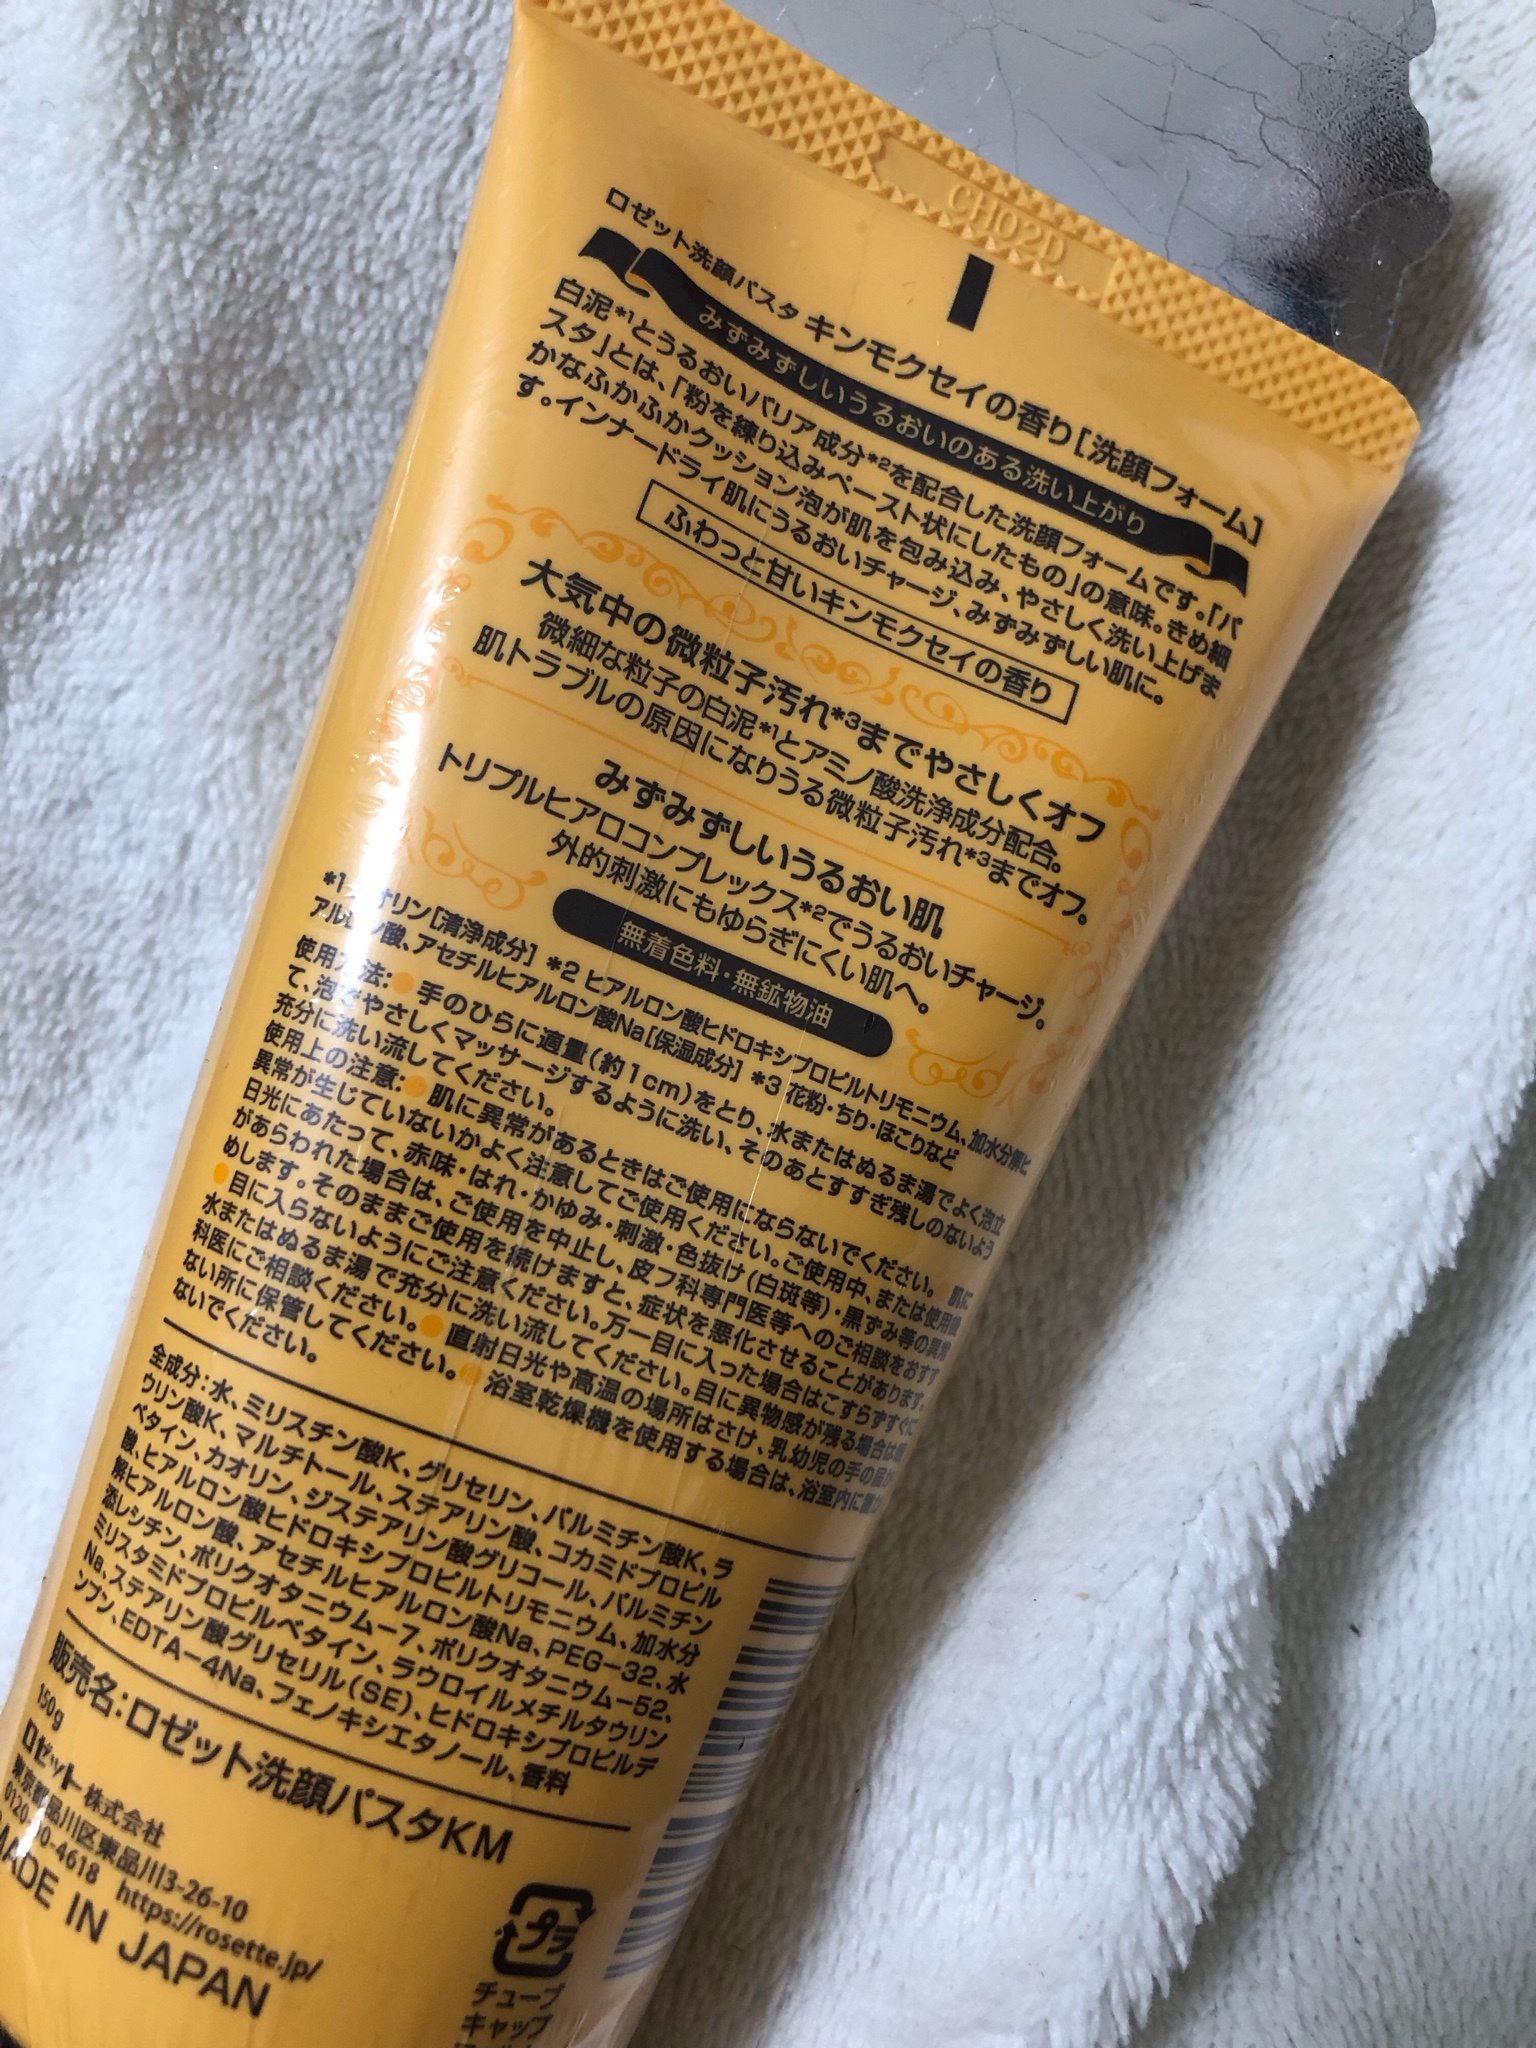 ロゼット / ロゼット洗顔パスタ キンモクセイの香りの公式商品情報